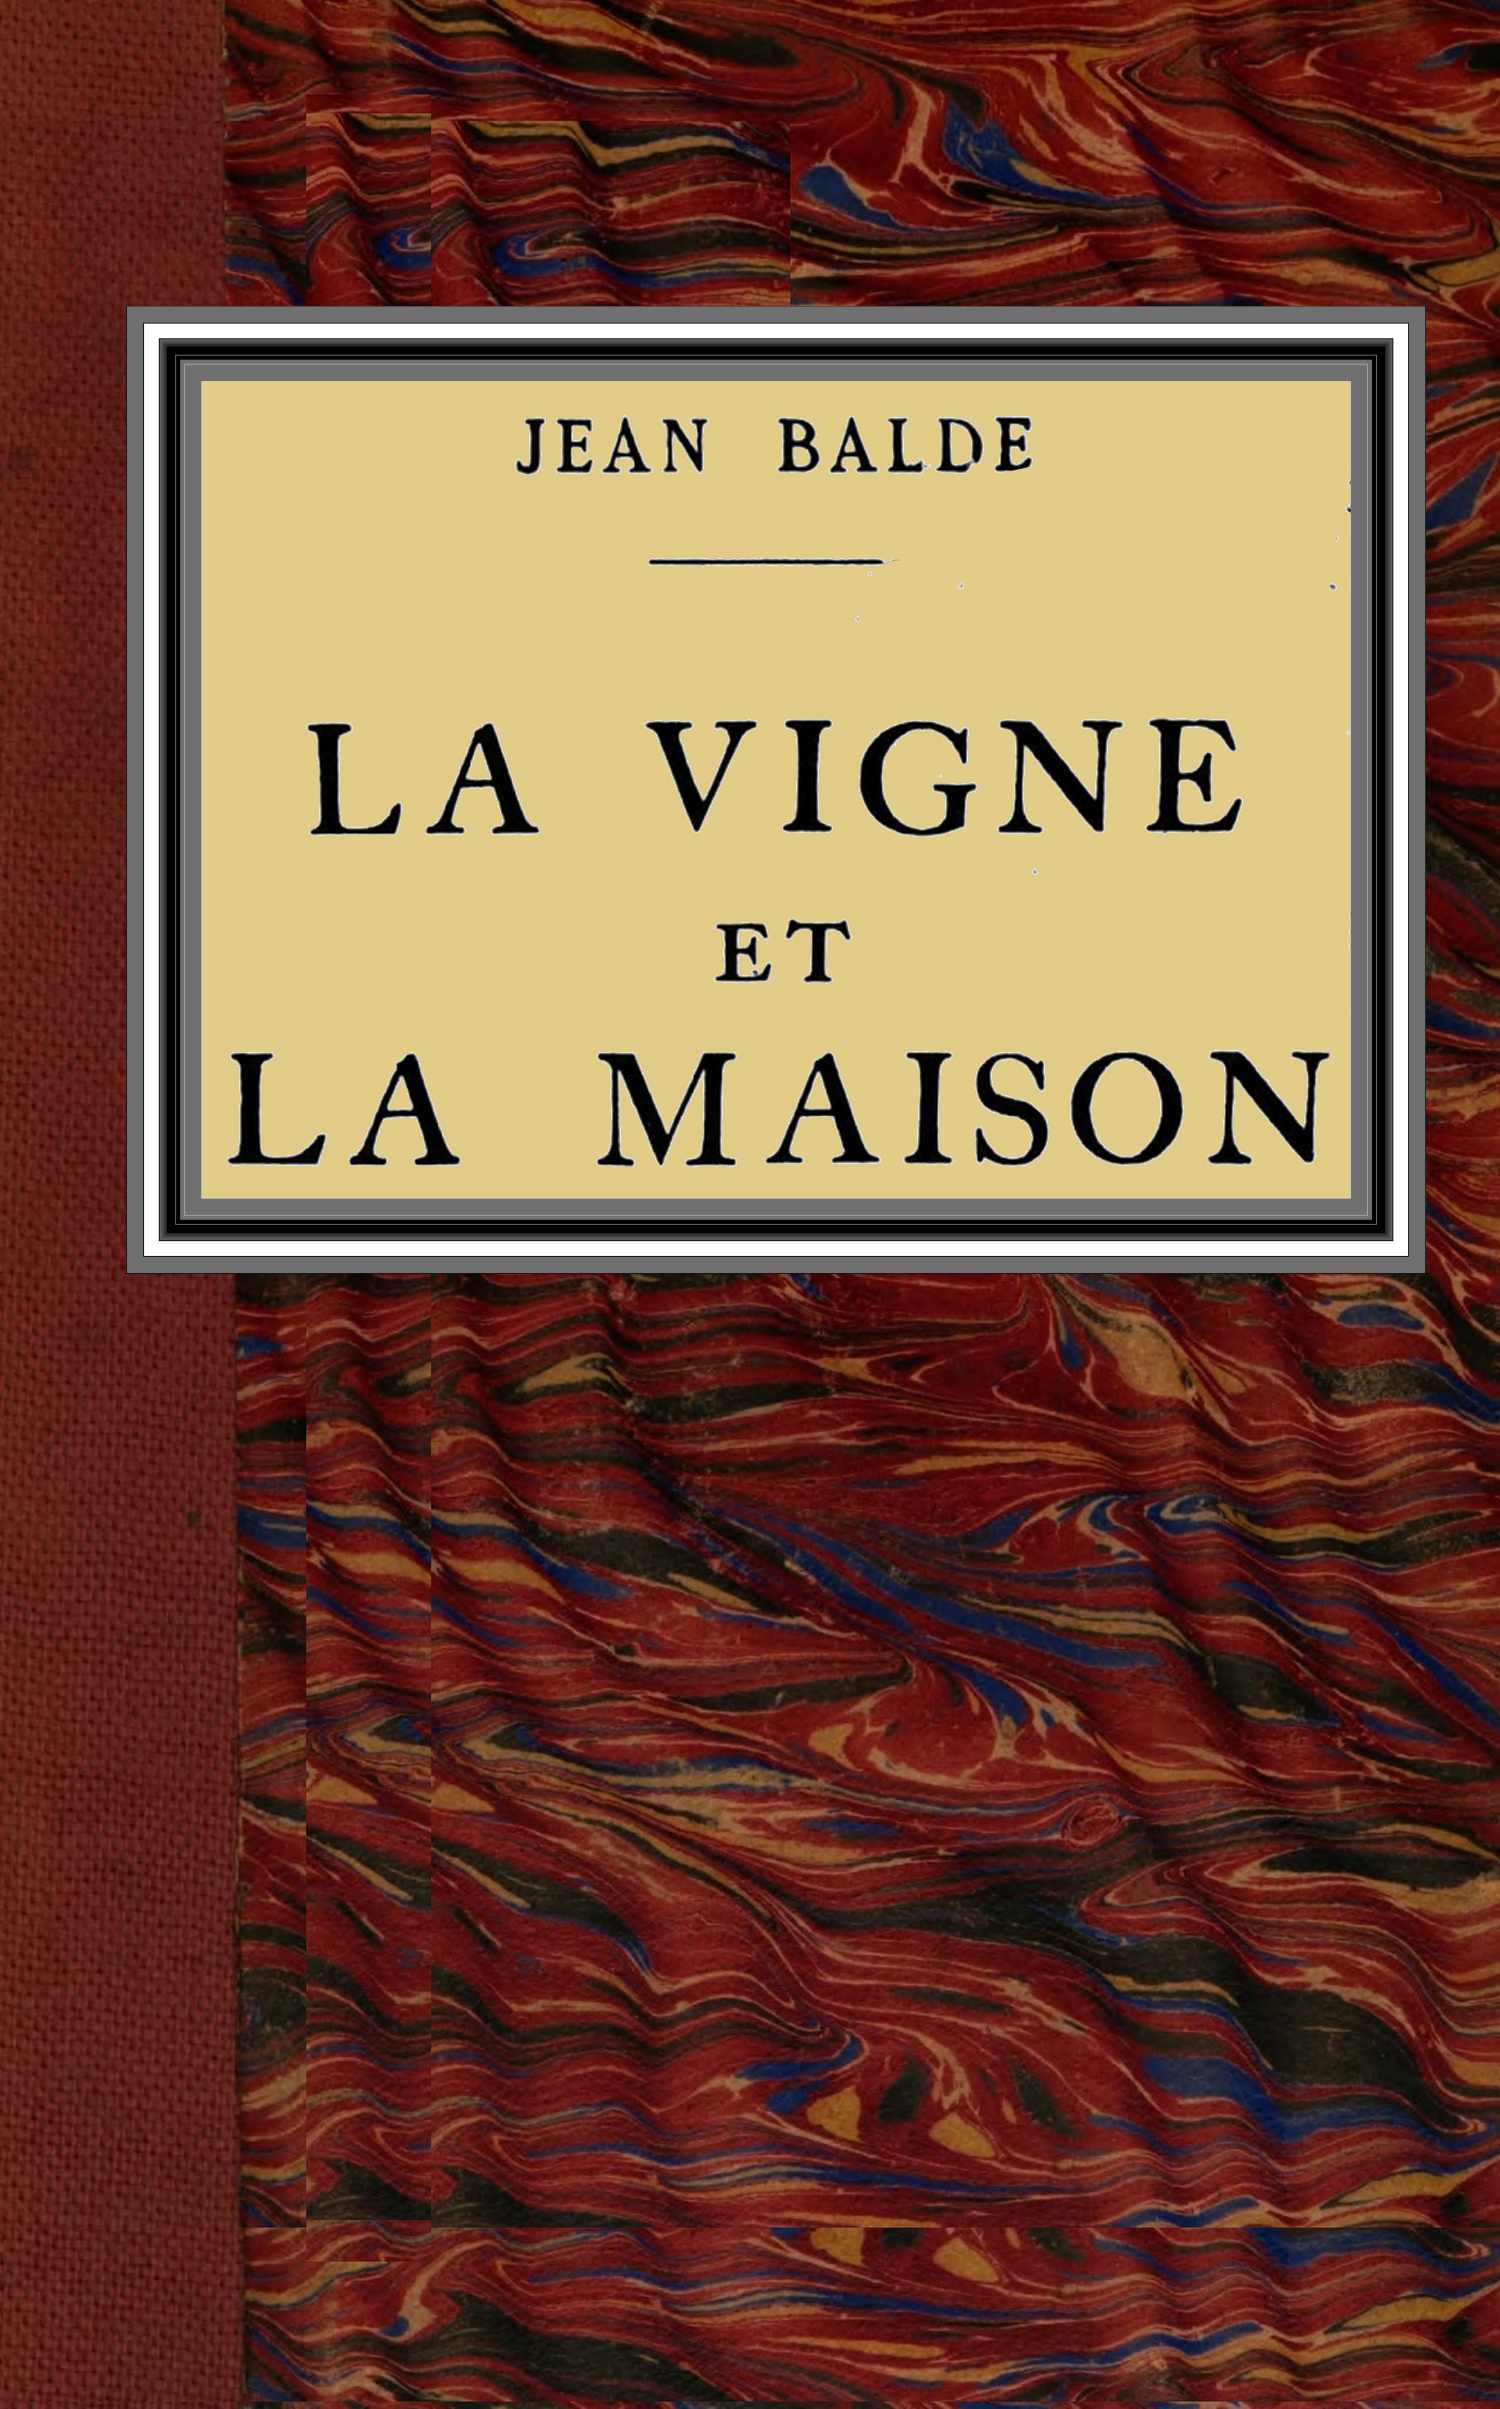 The Project Gutenberg eBook of La vigne et la maison, par Jean Balde.